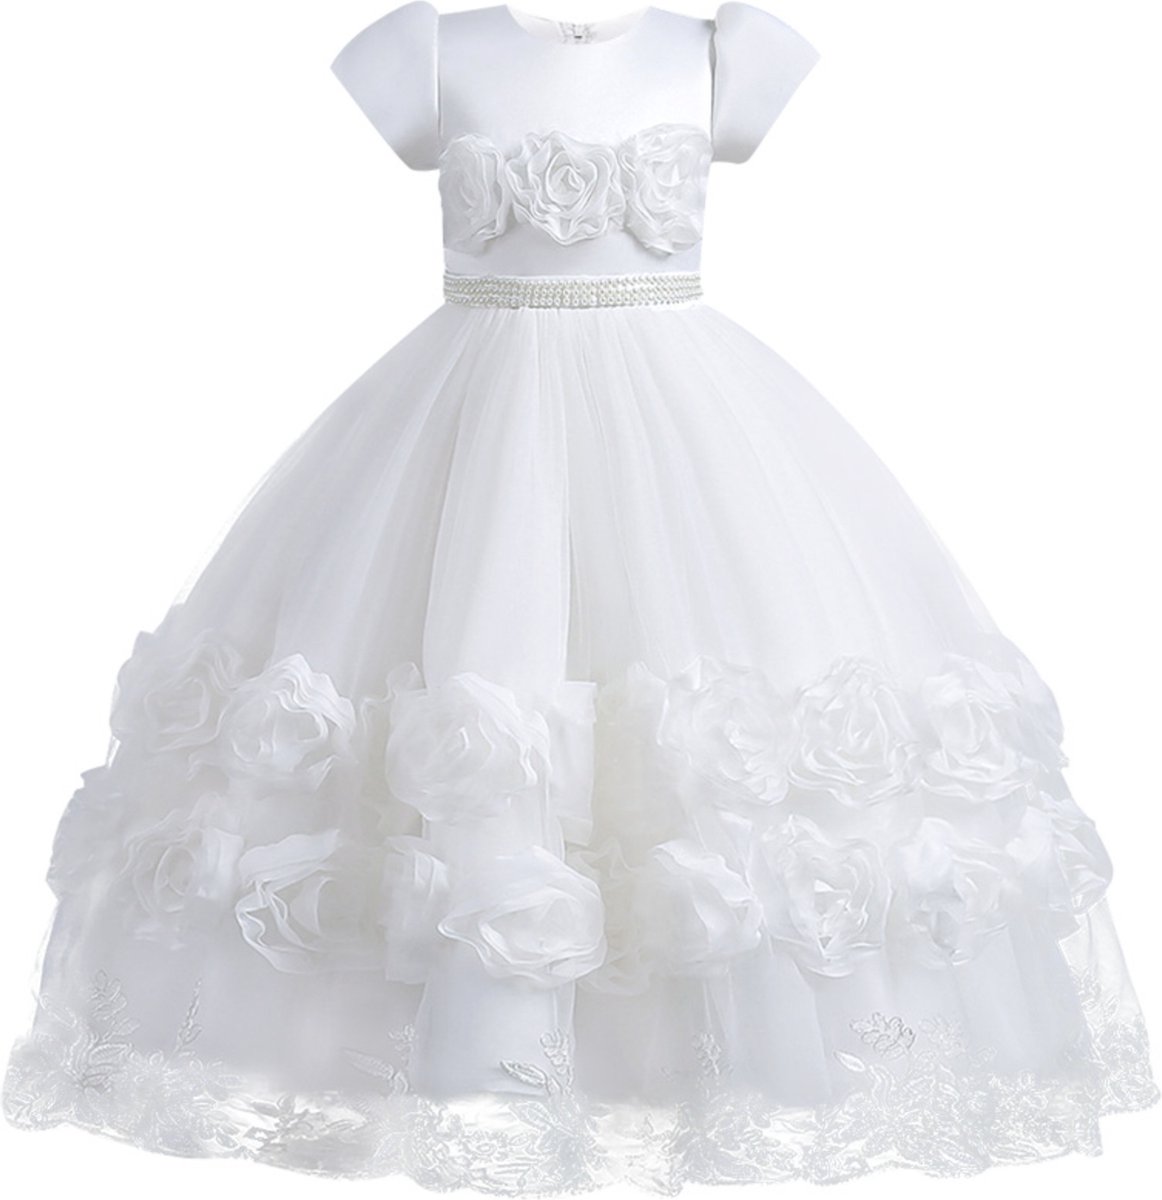 Feestjurk meisje - bruidsmeisjes jurken - Het Betere Merk - maat 116/122 (120) - communie jurk - bruidsmeisjes jurken voor kinderen - Prinsessenjurk meisje - cadeau meisje